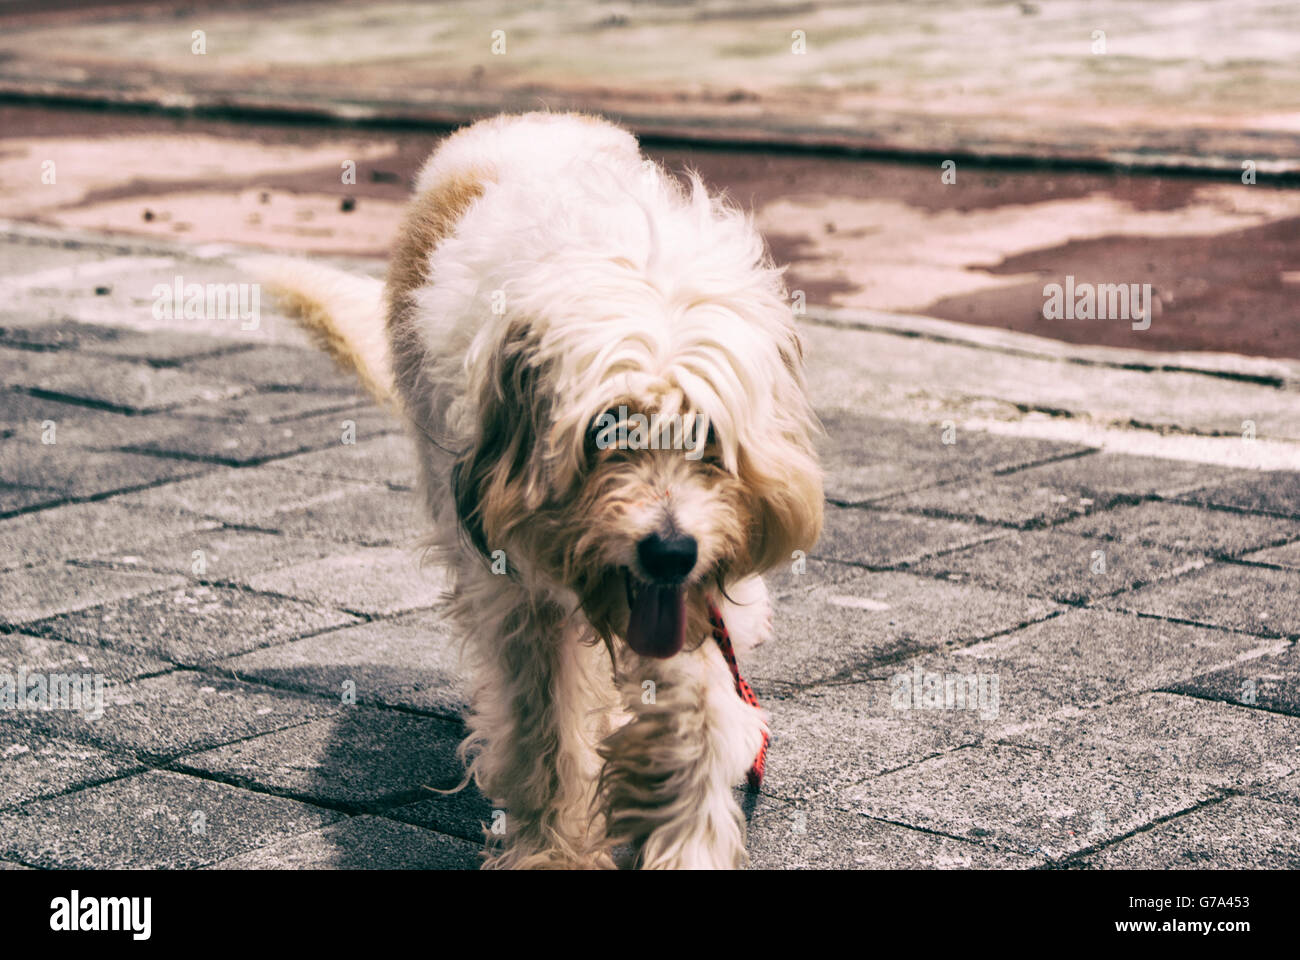 Fotografia di un cane peloso su un pavimento in calcestruzzo Foto Stock